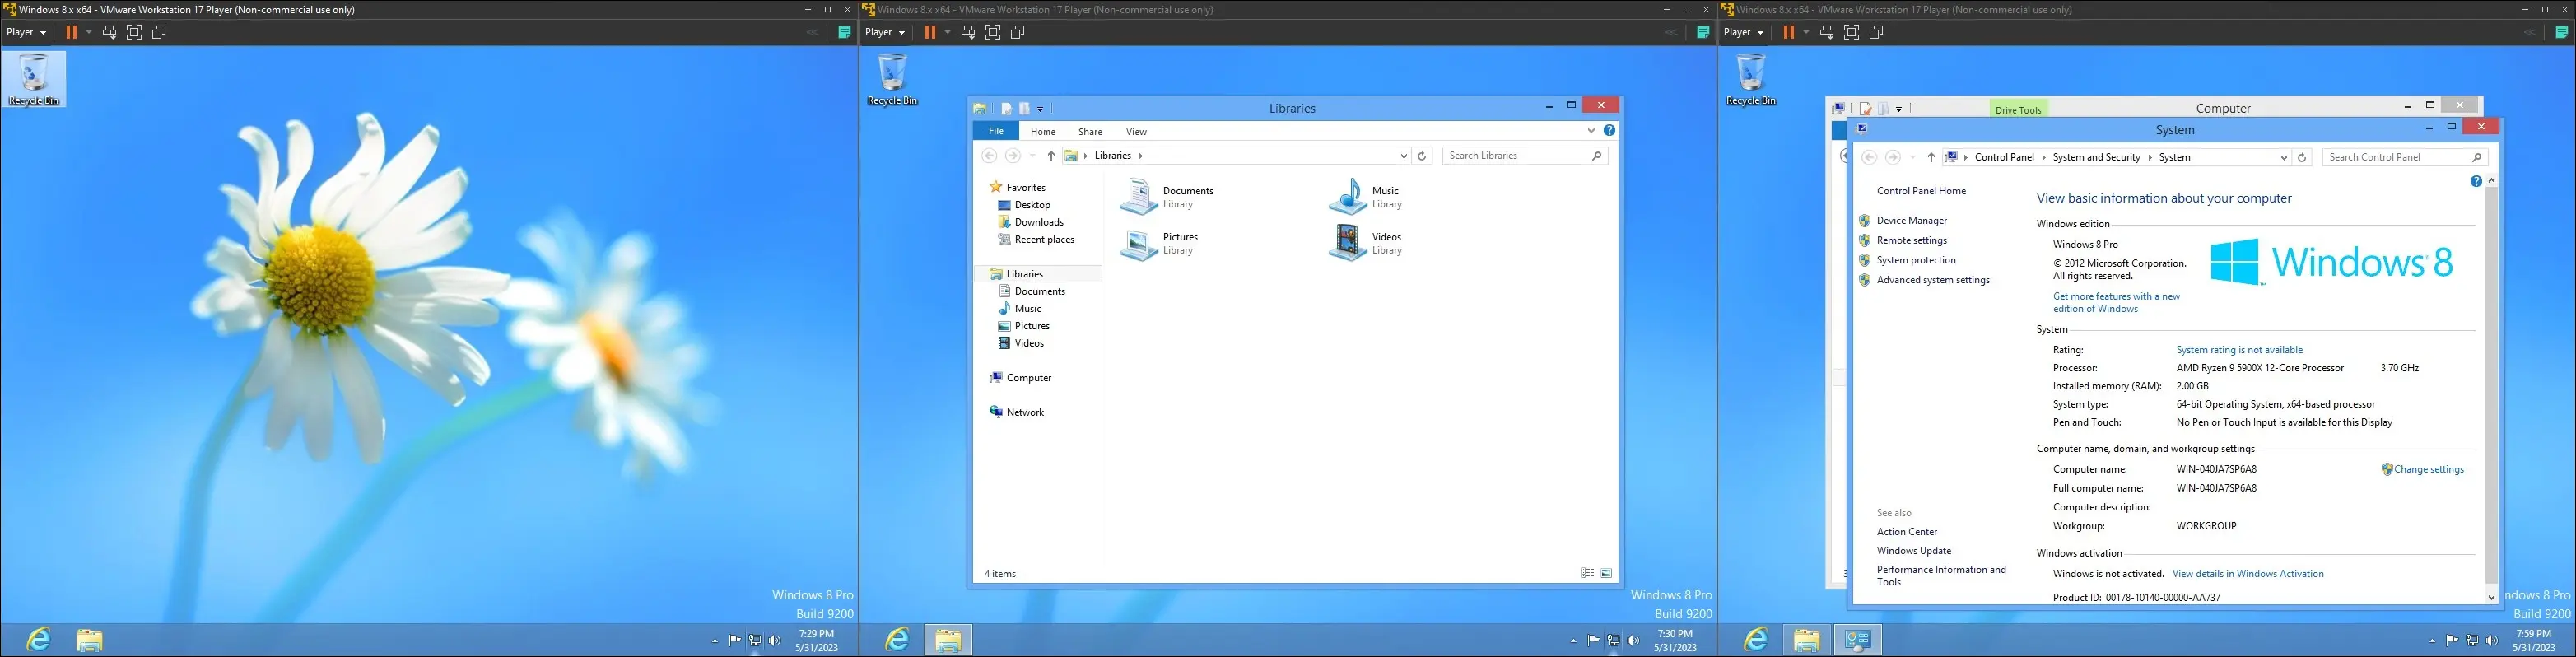 obrazy systemu Windows 8 na maszynie wirtualnej, przedstawiające pulpit, interfejs eksploratora i stronę „Informacje o komputerze”